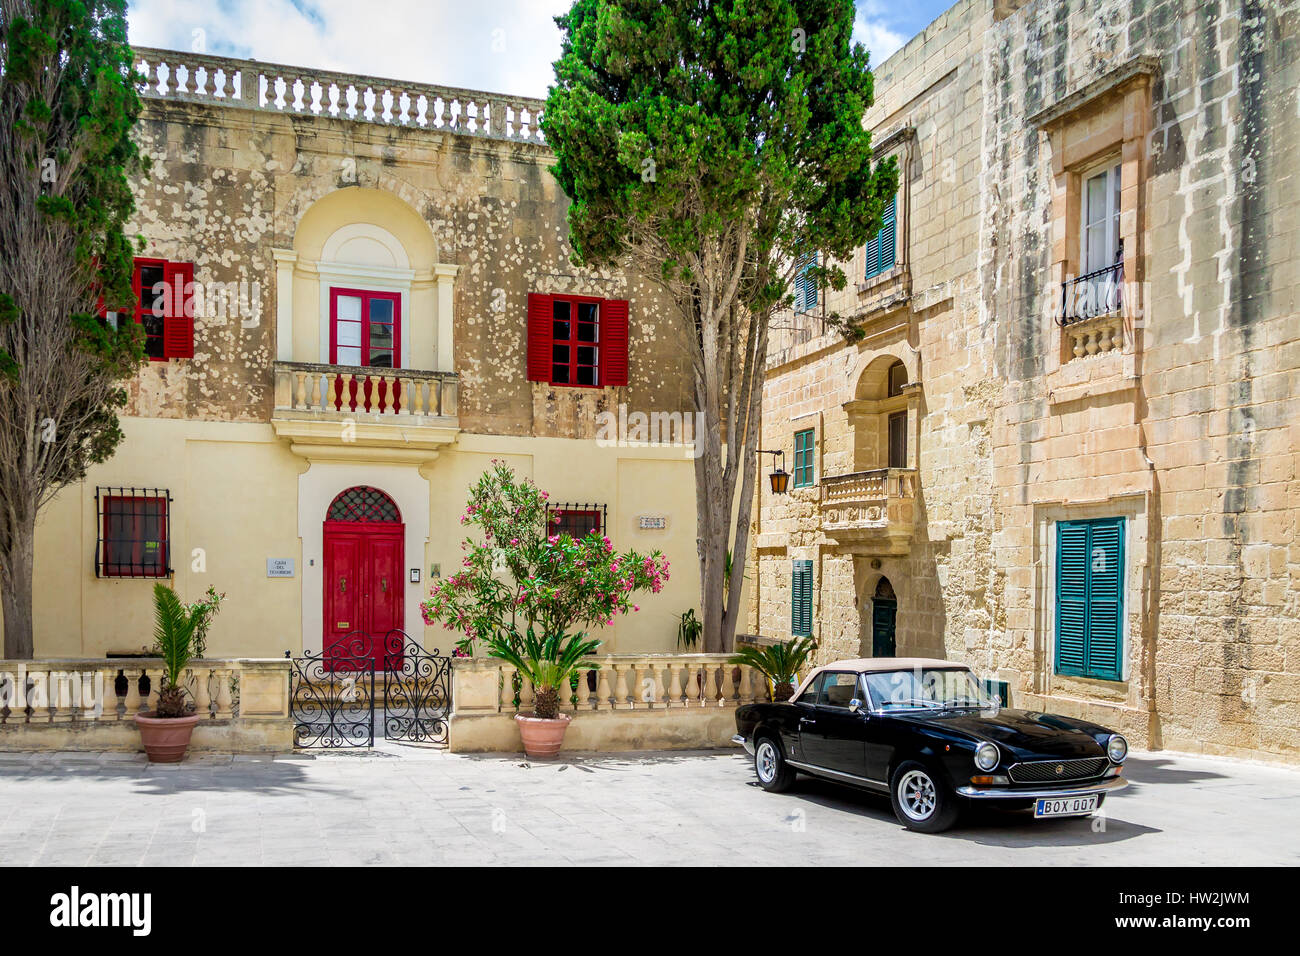 Altes Steinhaus mit bunten Fenstern und schwarz klassisch Cabrio - Mdina, Malta Stockfoto